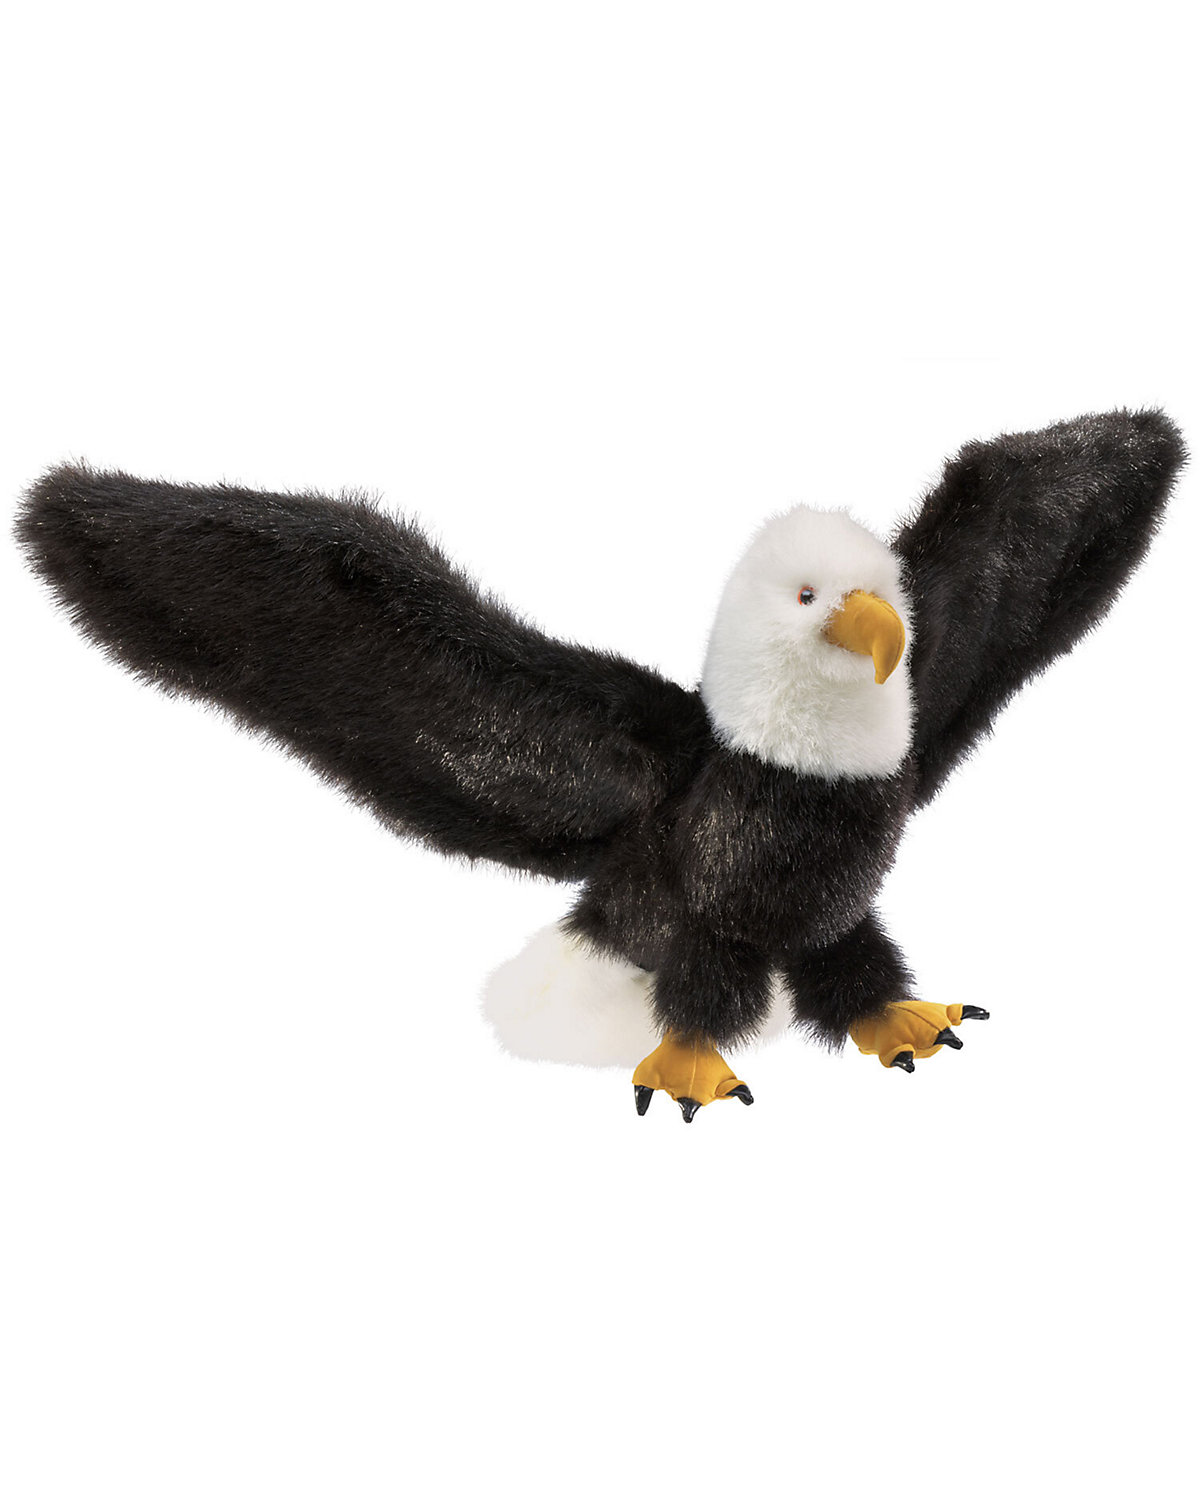 Folkmanis Handpuppe Adler / Eagle